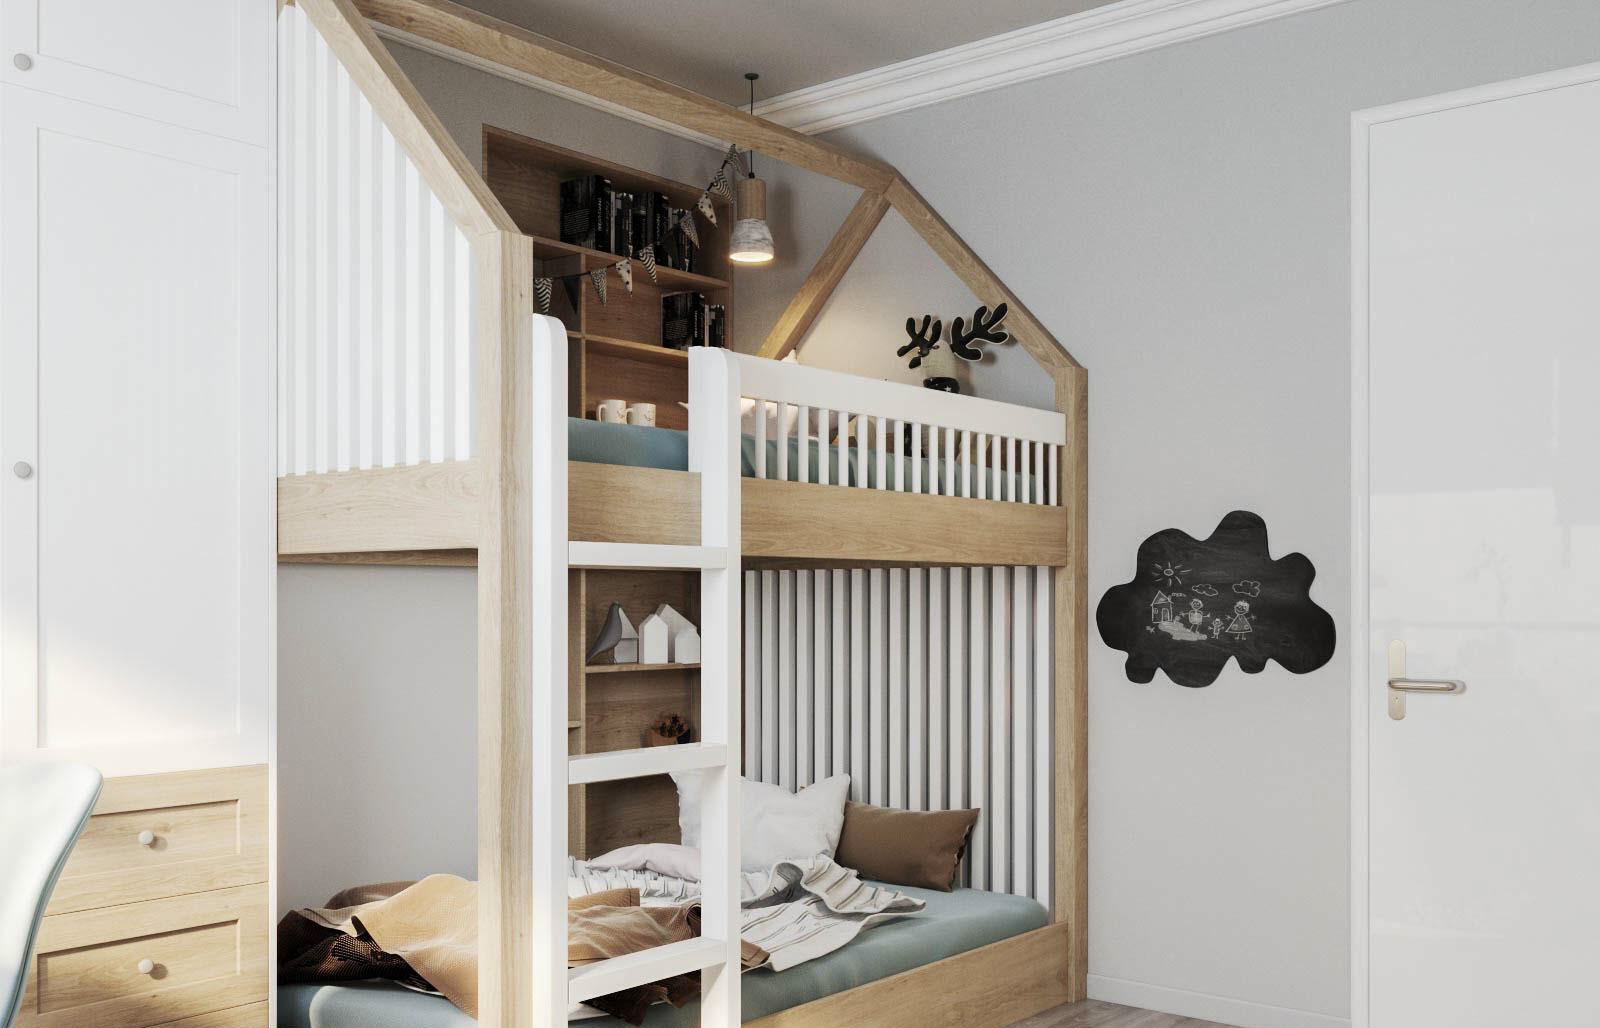 Thiết kế giường tầng thoáng đẹp, hình dáng ngôi nhà vững chắc cho các bé.